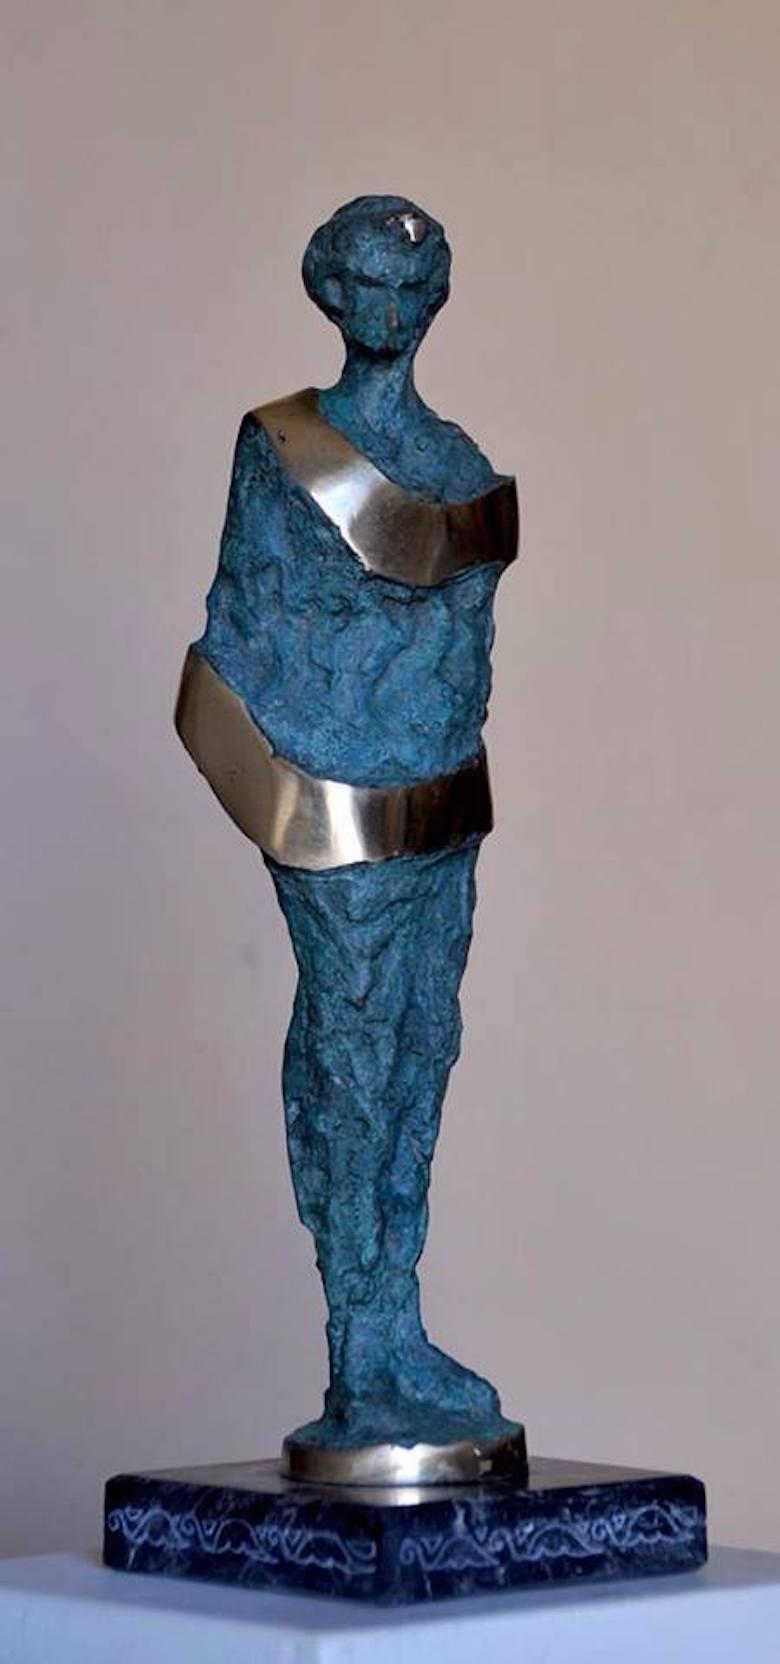 "Geschmückt II" Bronze-Skulptur 14" x 4" x 2" Zoll von Sarkis Tossonian		

* Aufgrund der Politik des Kulturministeriums kann die Bearbeitungszeit (Papierkram) bis zu 2-3 Wochen dauern. 

Sarkis Tossoonian wurde 1953 in Alexandria geboren. Er